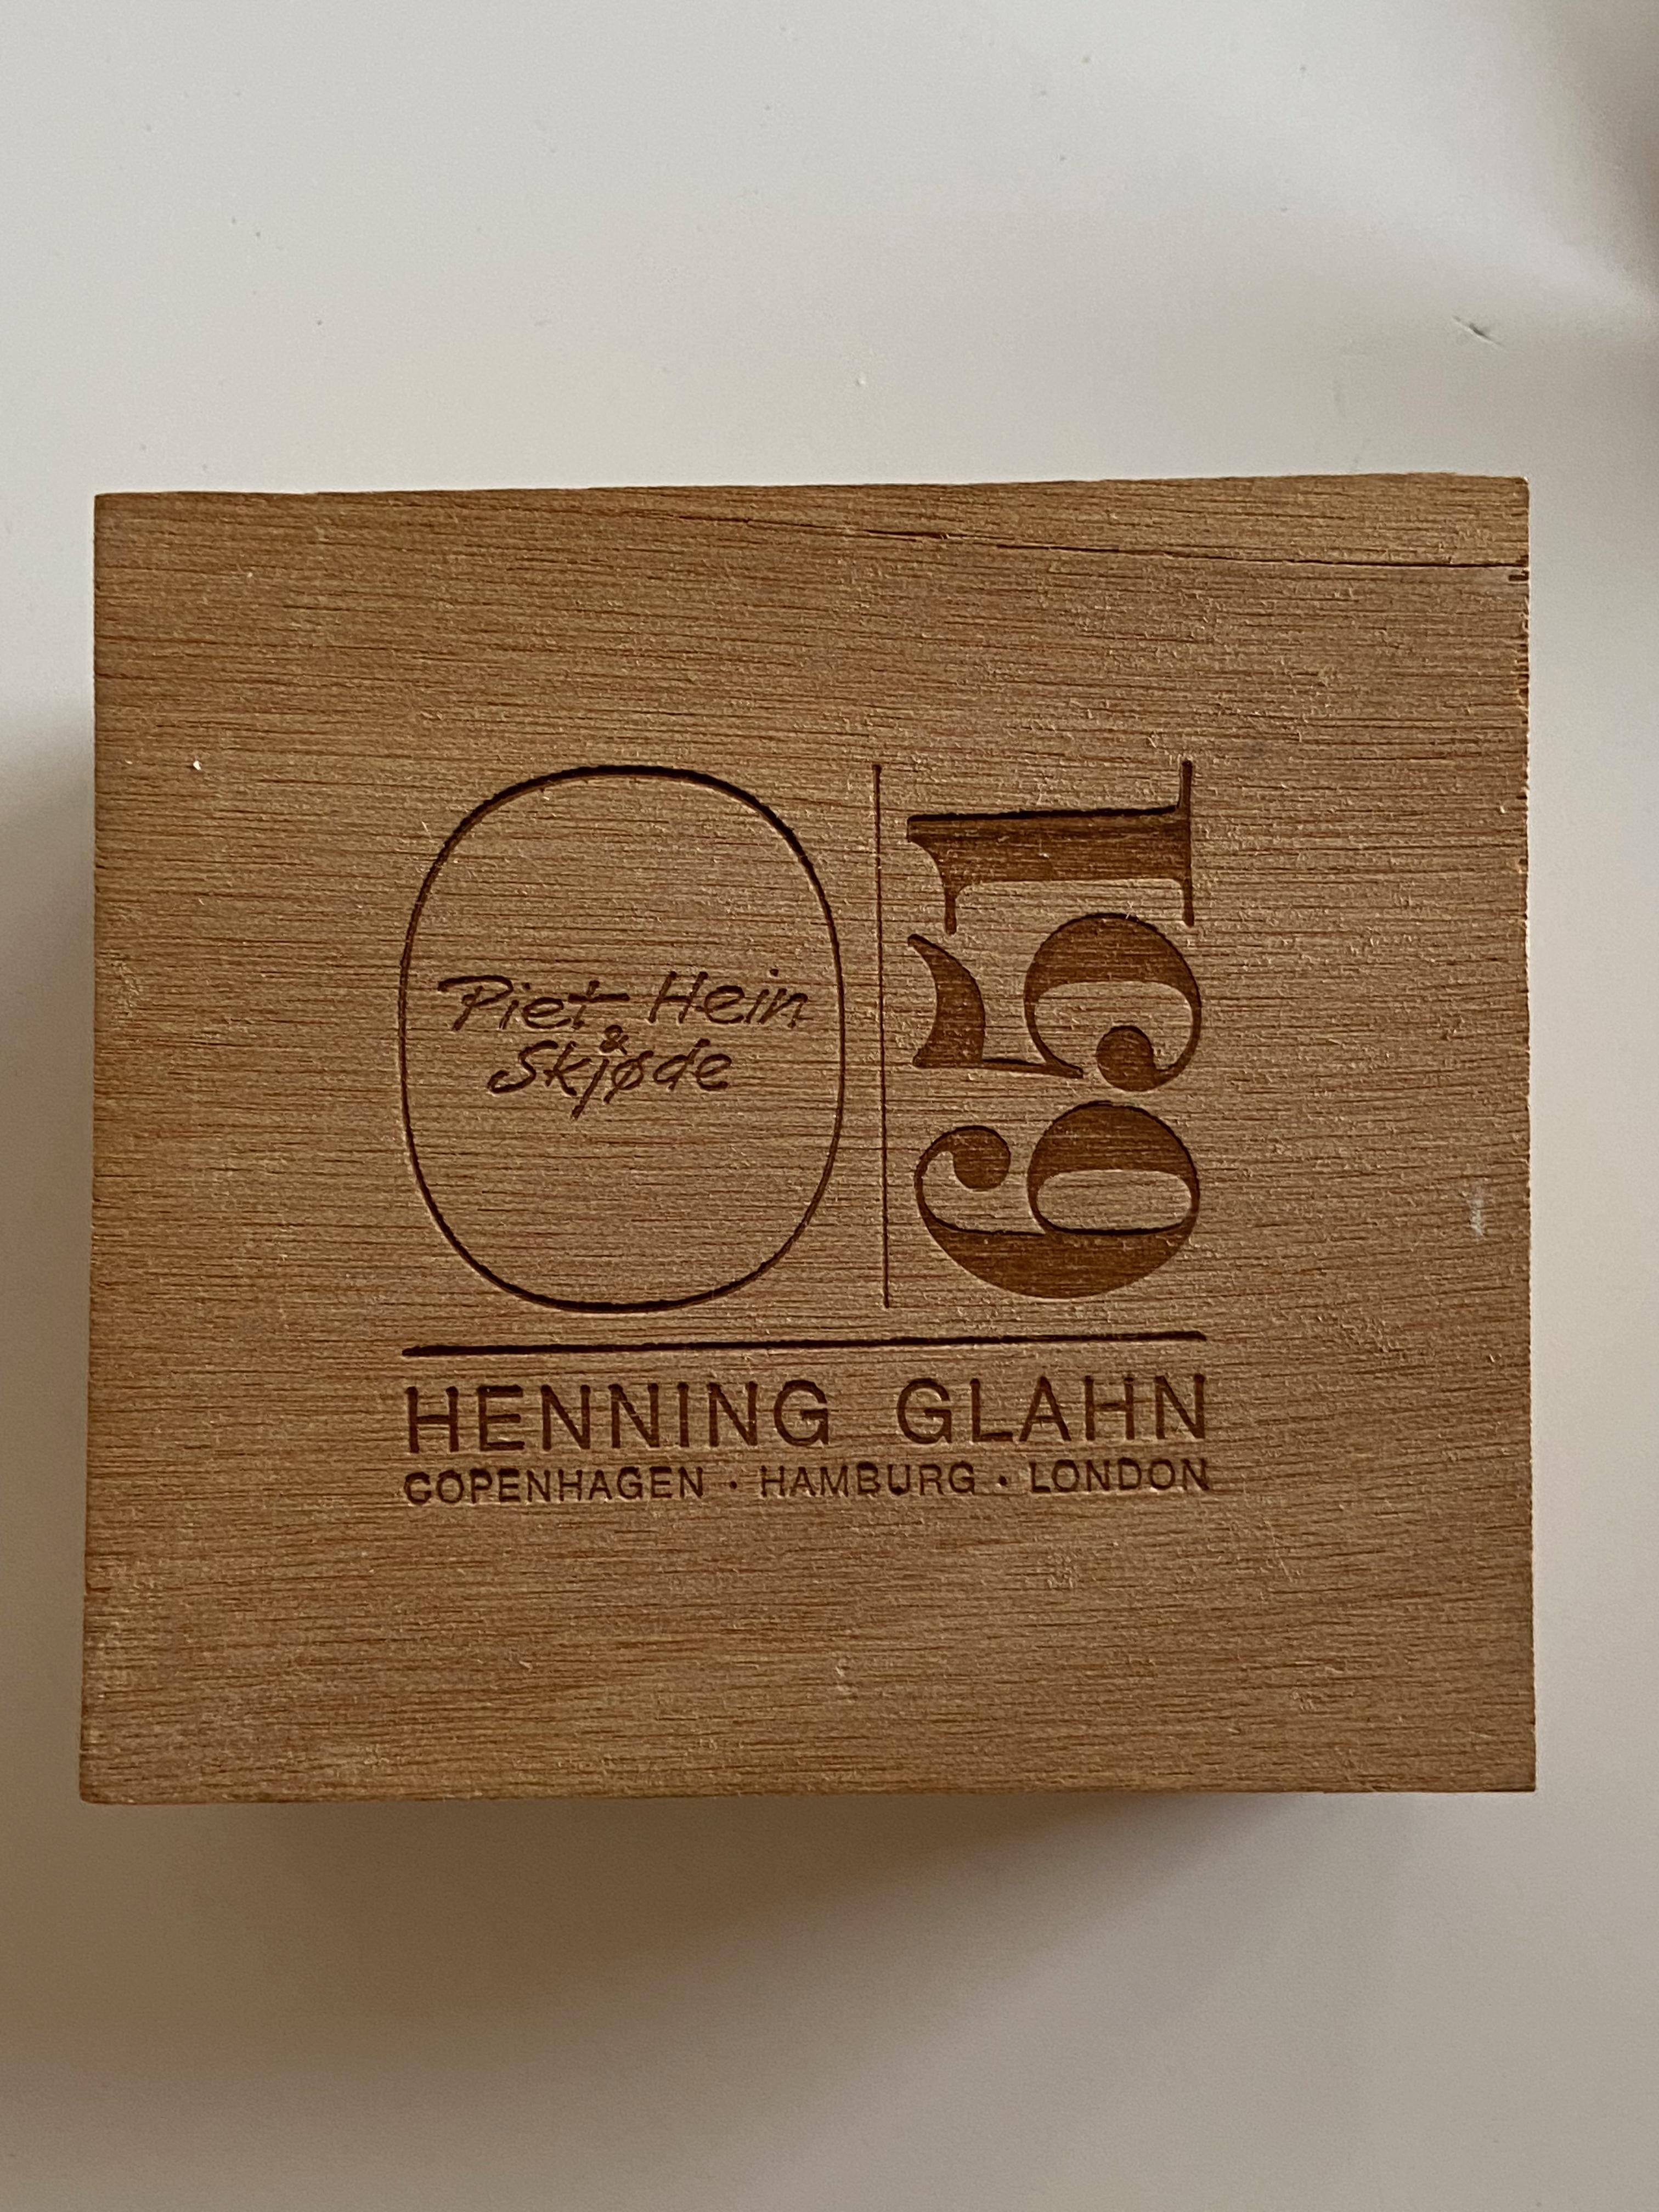 Piet Hein Super-Ei mit Lederetui, Booklet und Original-Box. Das Superei ist aus massivem Messing, hergestellt von Henning Glahn, Dänemark. Preis für das Set.
   